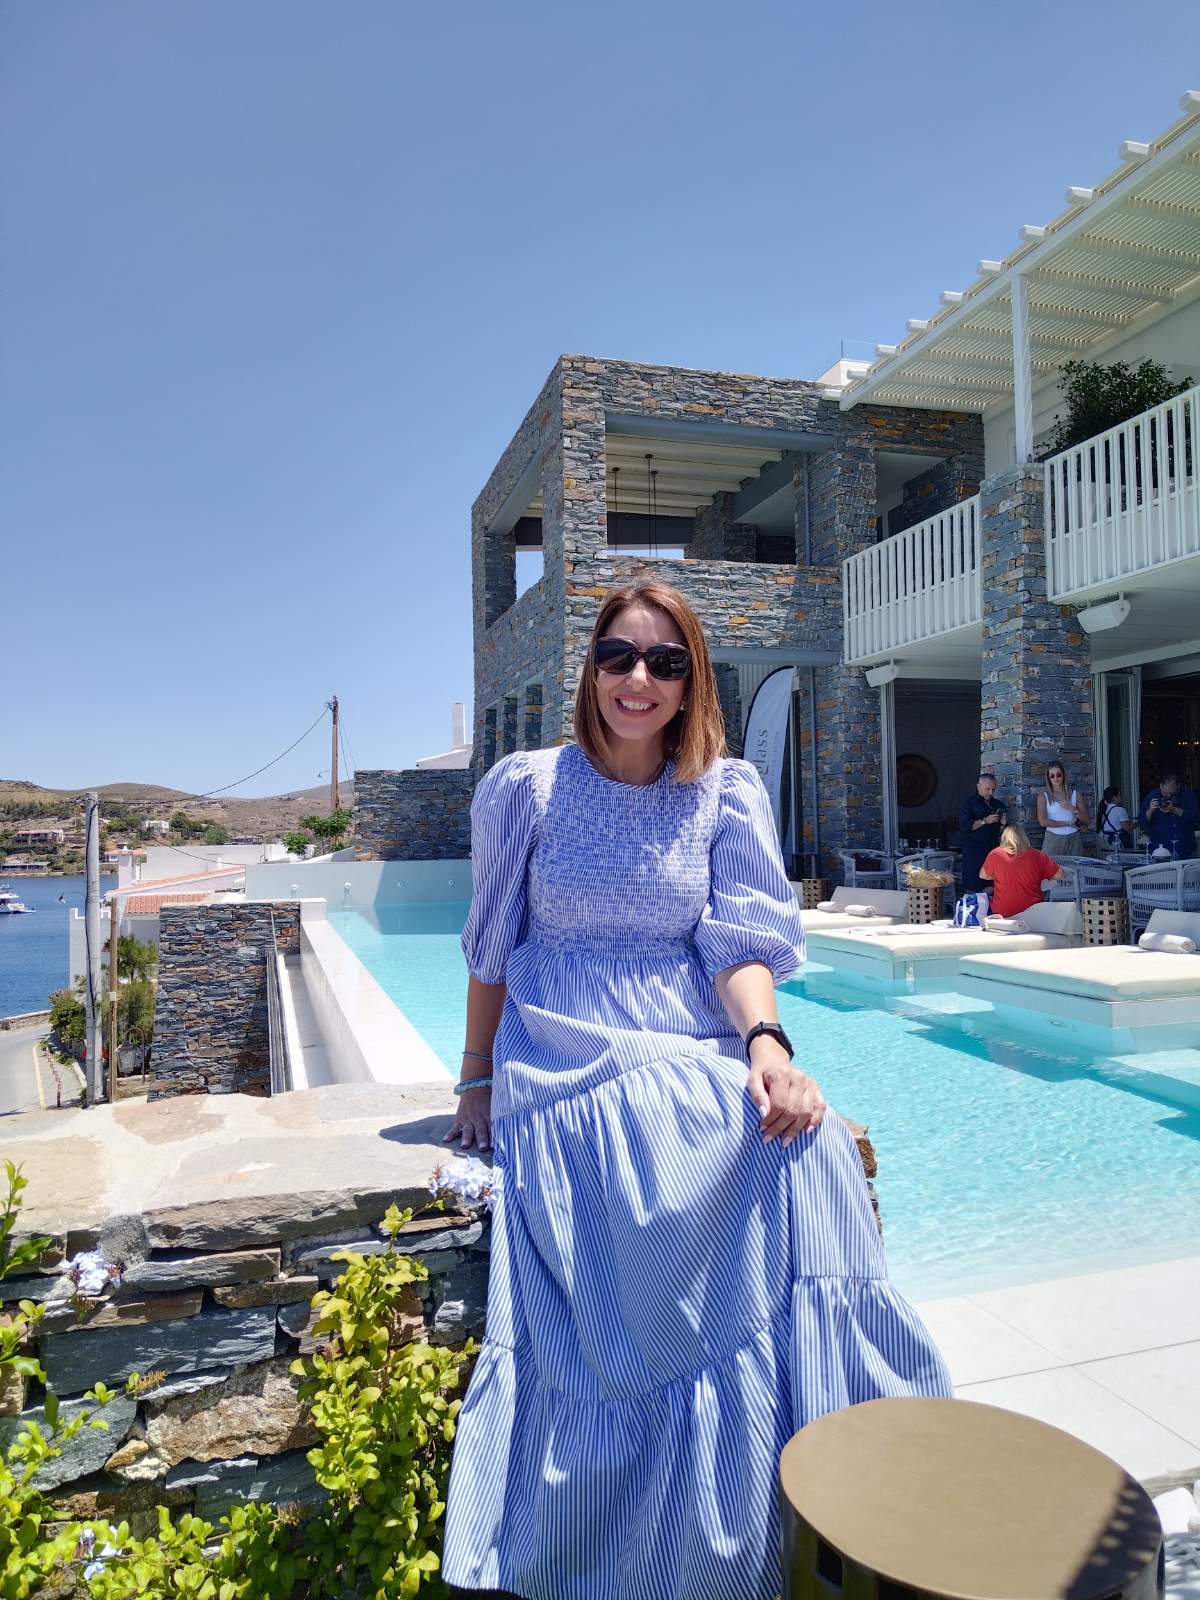 Ydor Hotel & Spa: Το μαγευτικό ξενοδοχείο στην Κέα με την απαράμιλλη ομορφιά και τη θέα στο γαλάζιο